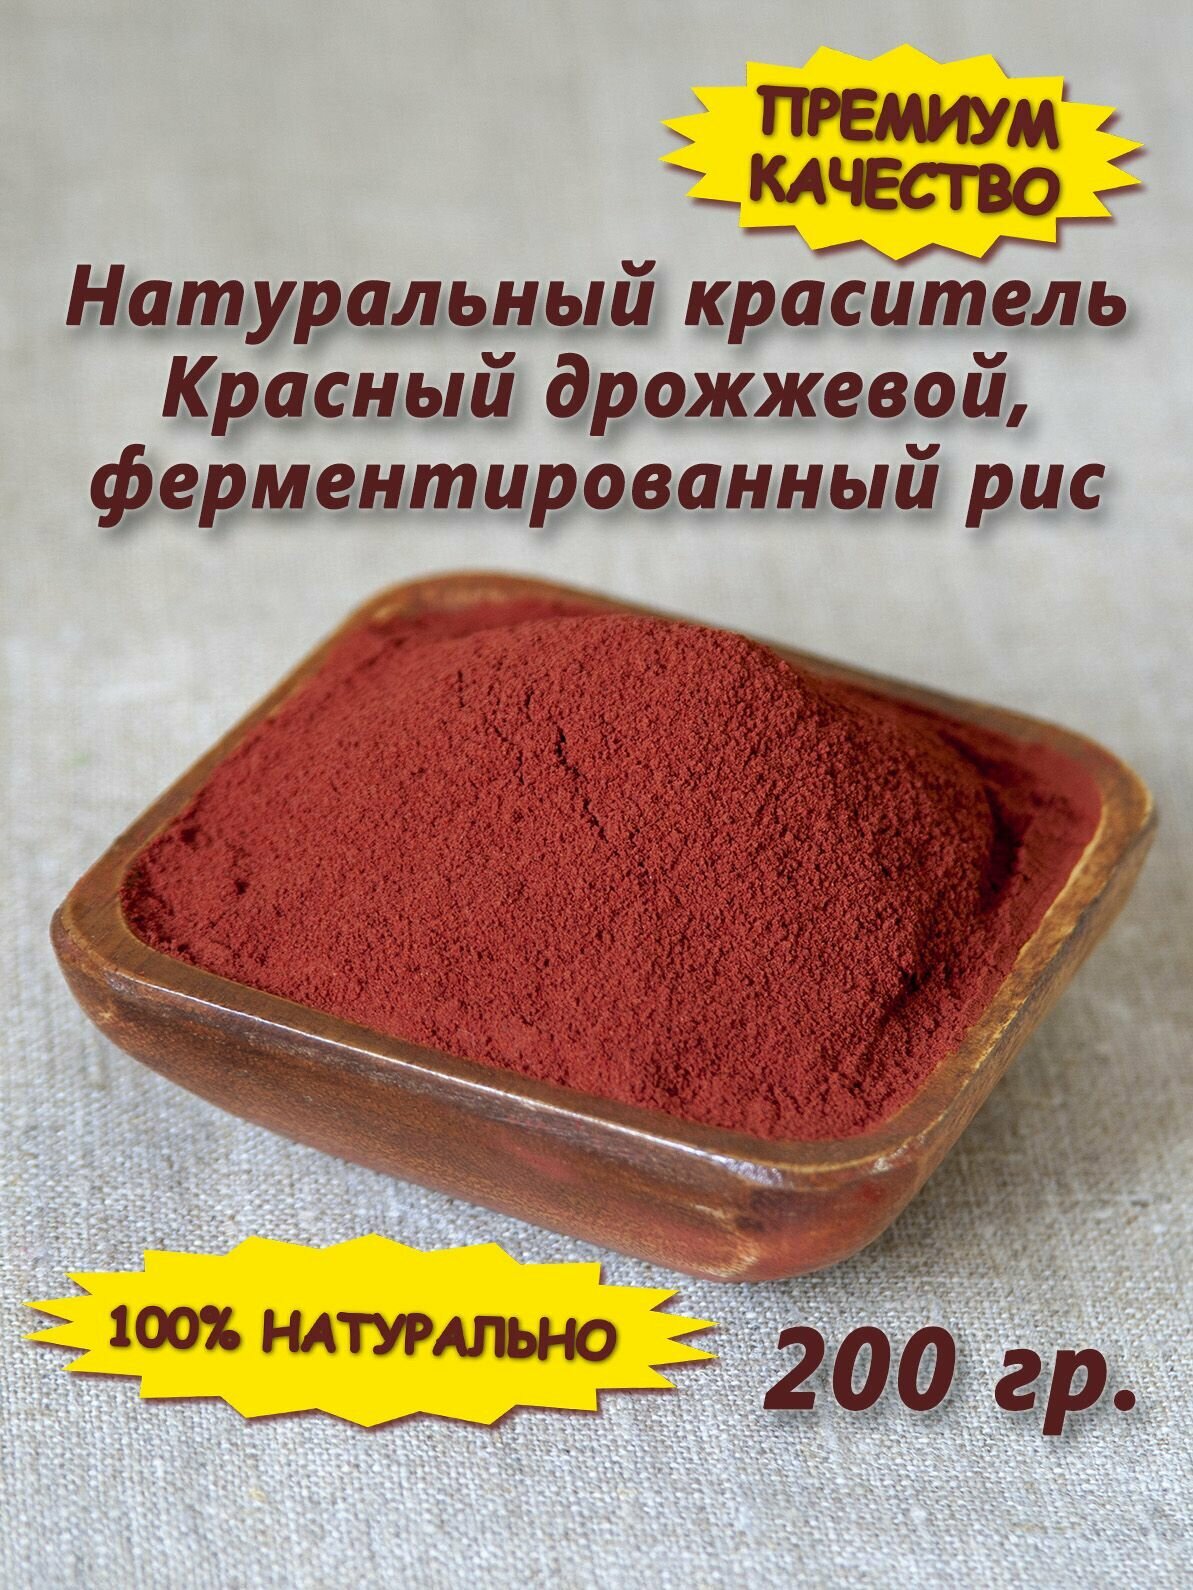 Натуральный красный пищевой краситель -дрожжевой ферментированный рис